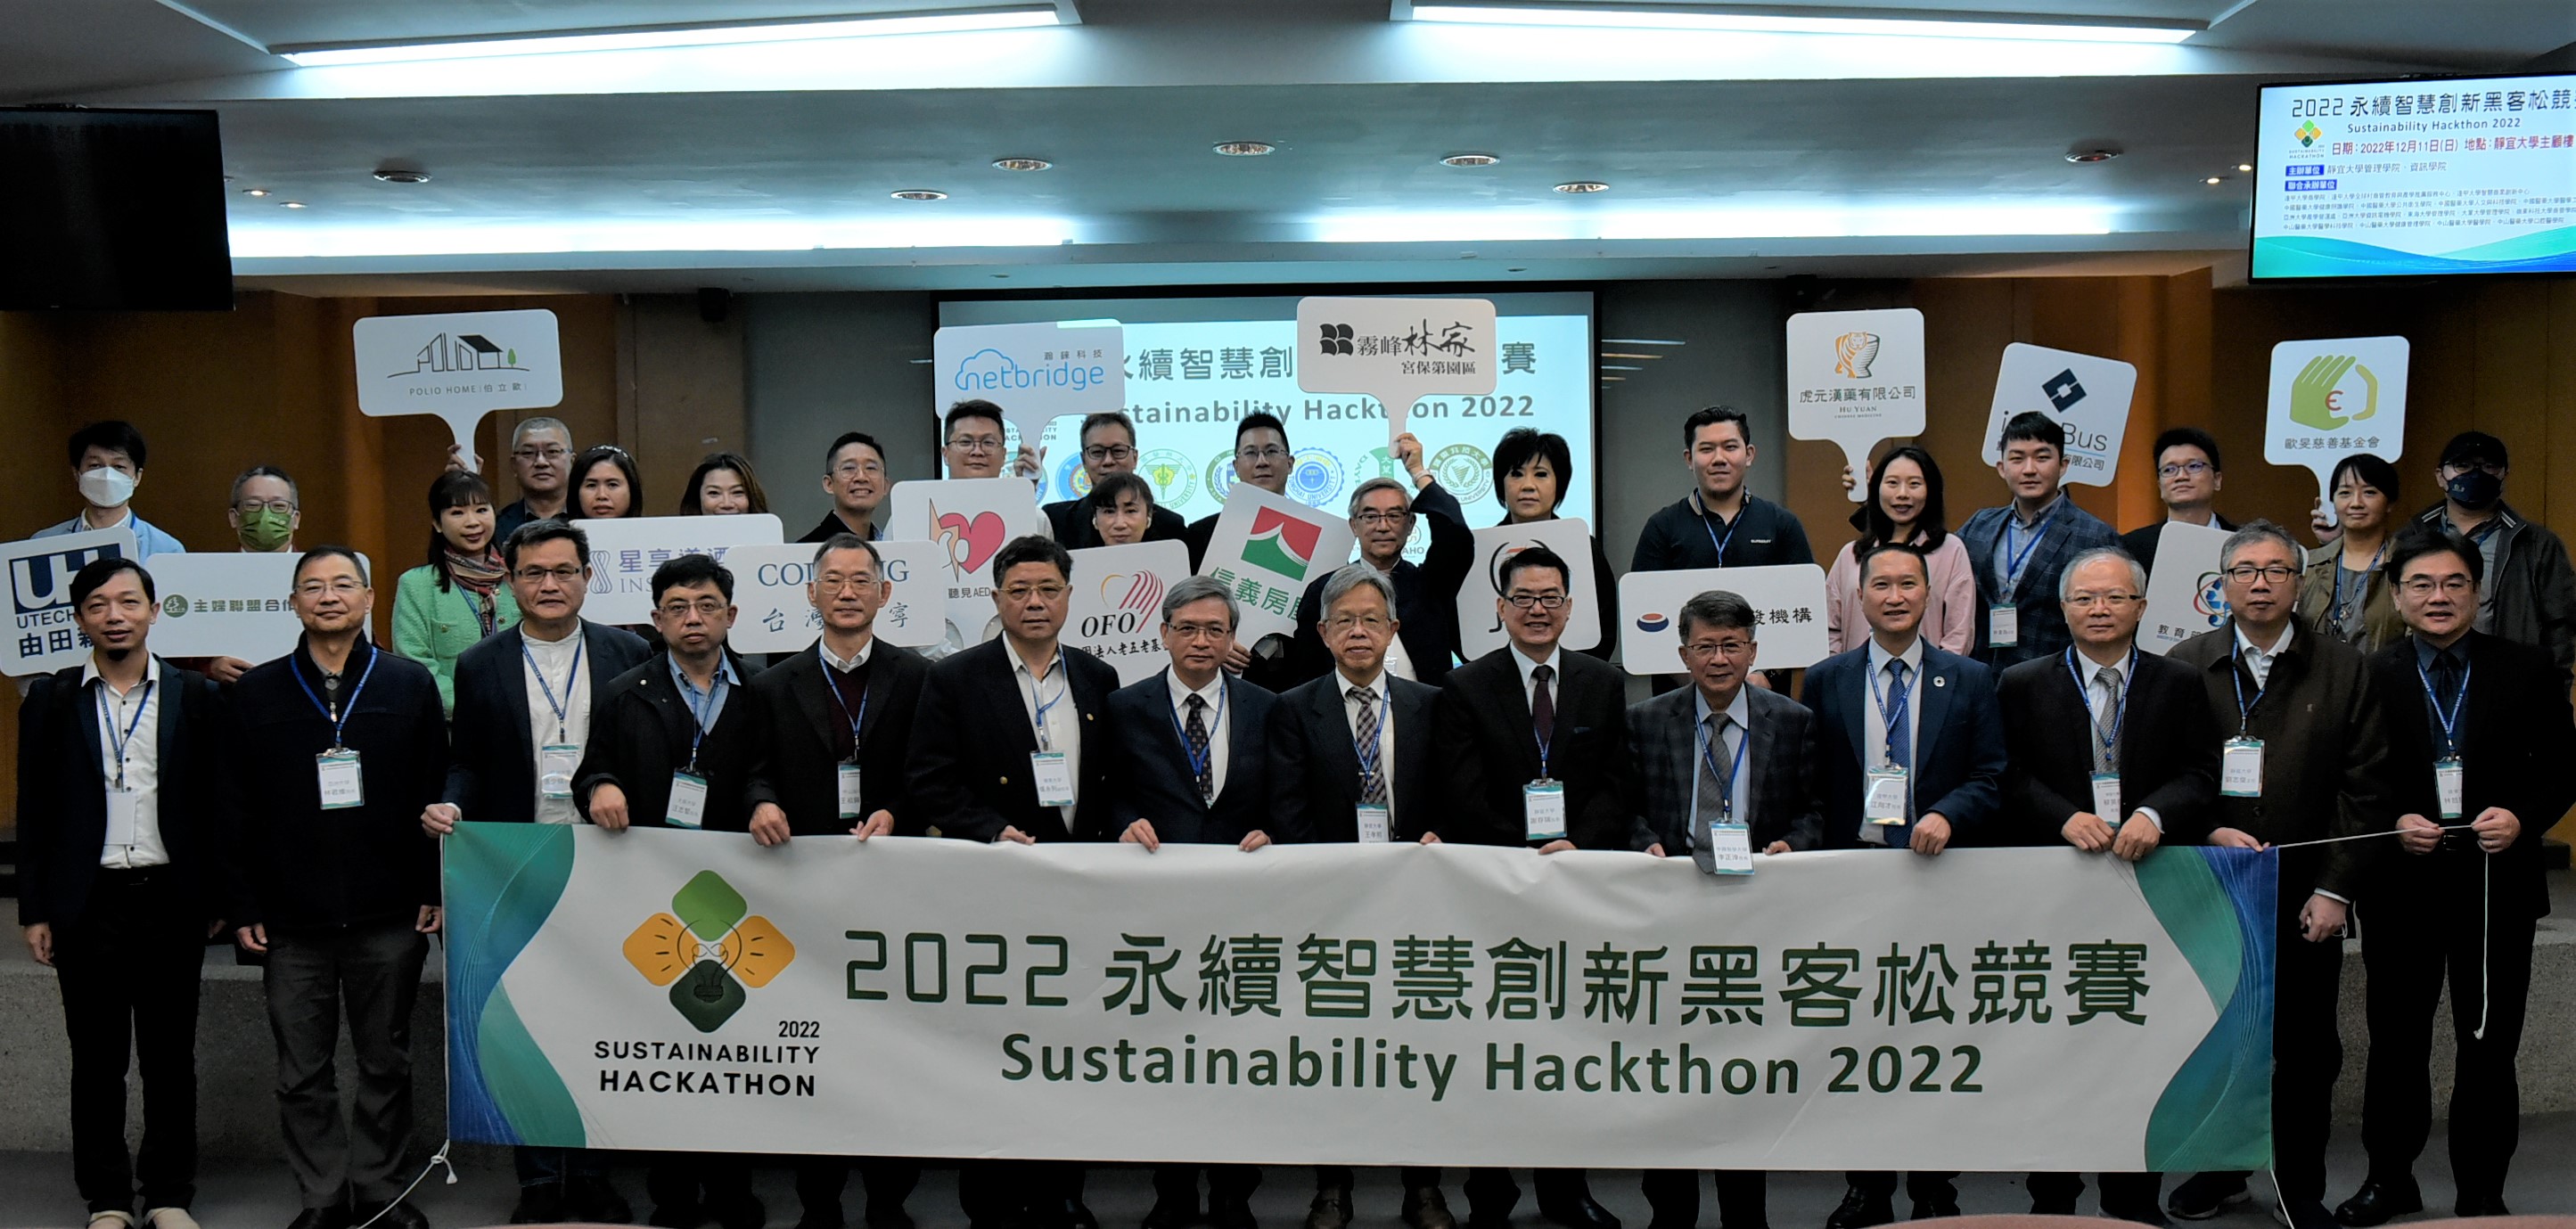 圖為「2022永續智慧創新黑客松競賽」，亞大由副永續長張少樑(前排左3)、管理學院院長林君維(前排左2)、副產學長鄭家年(前排左1)代表出席。